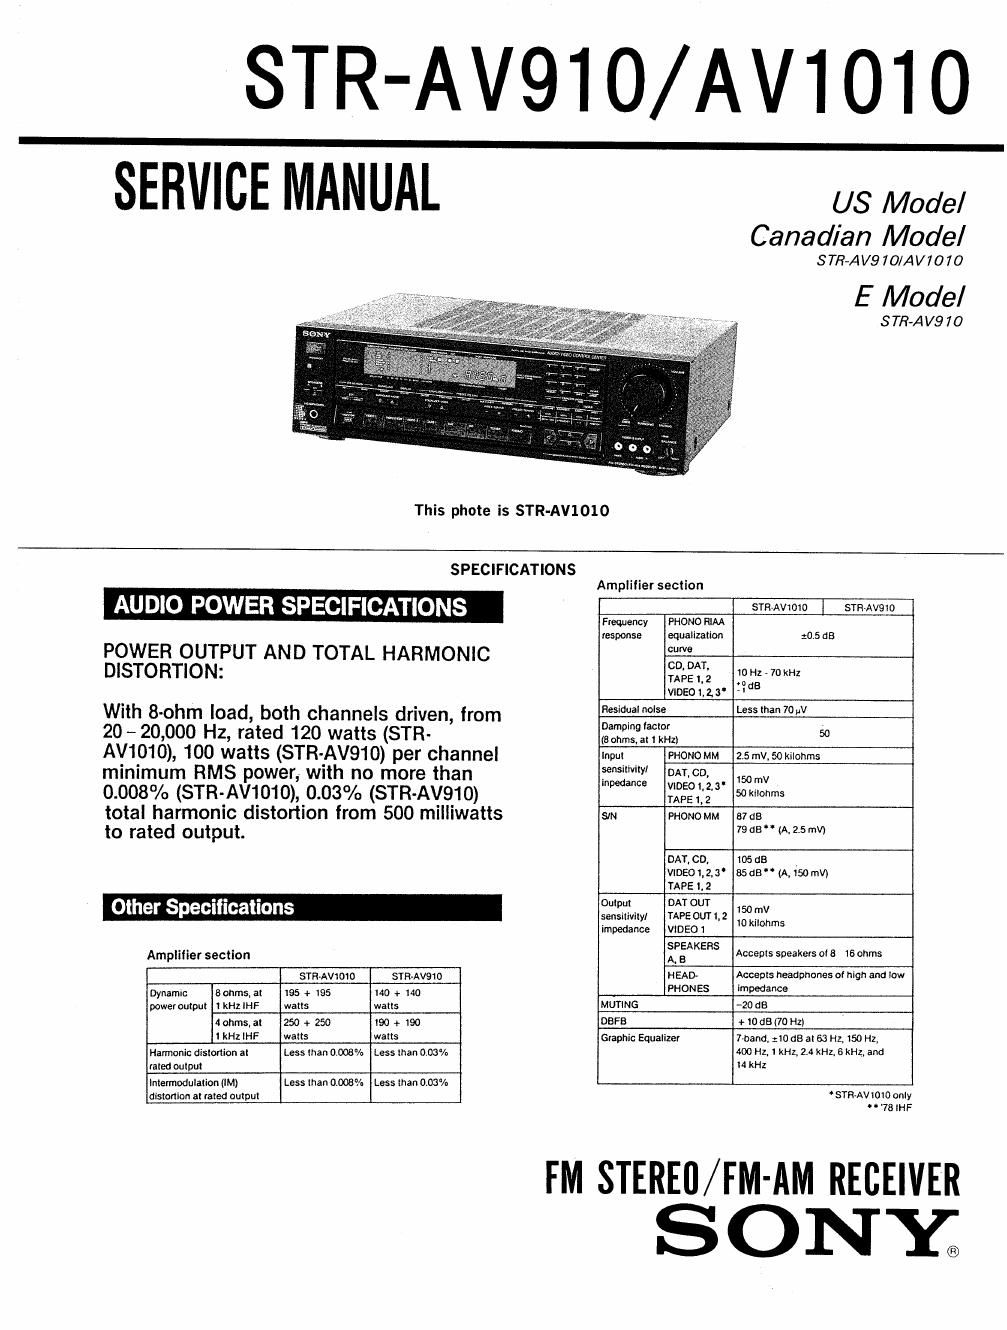 sony str av 910 avr service manual